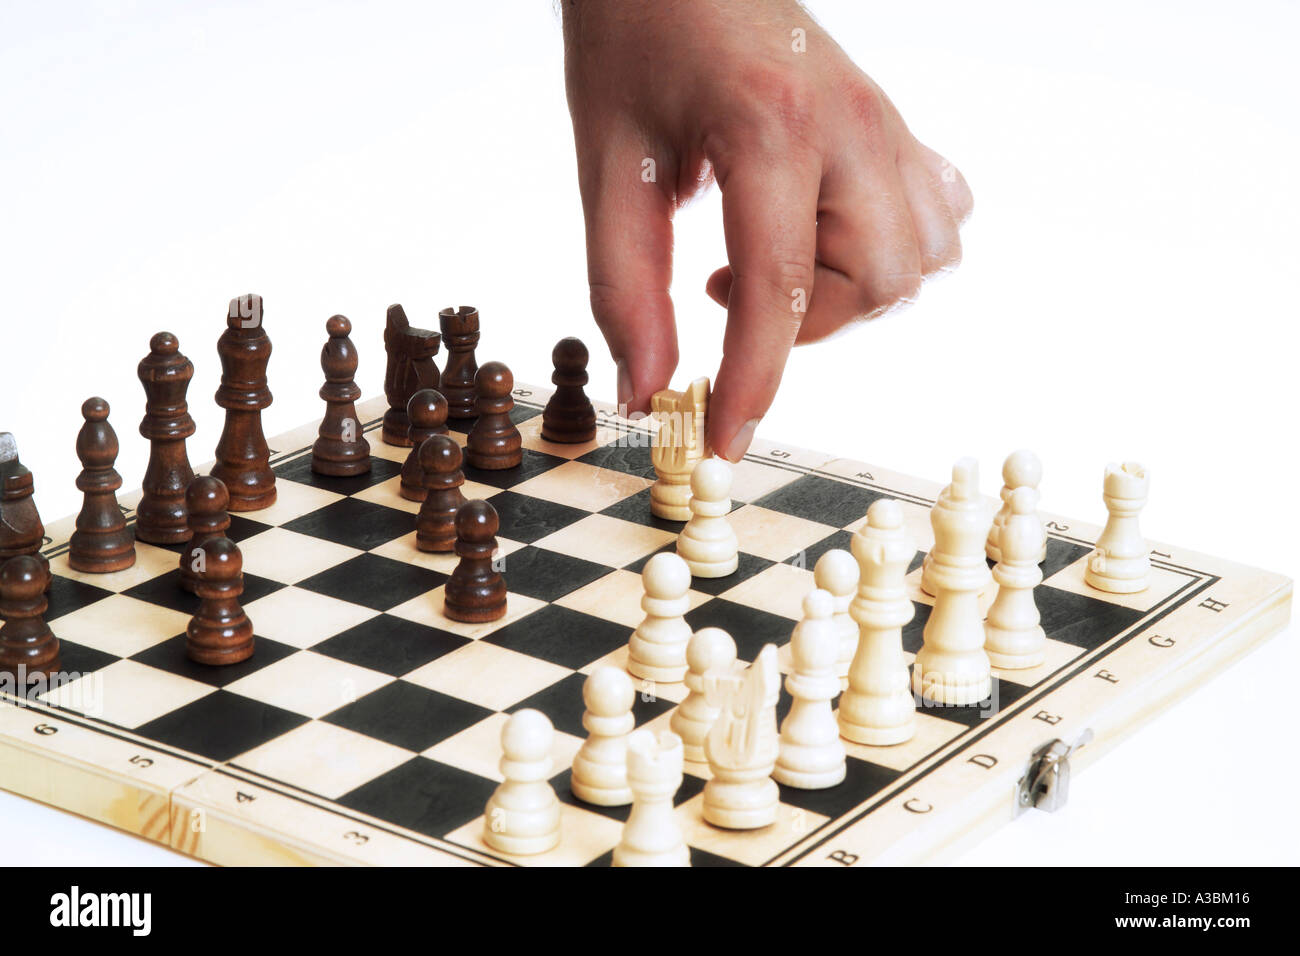 Mosse di scacchi immagini e fotografie stock ad alta risoluzione - Alamy